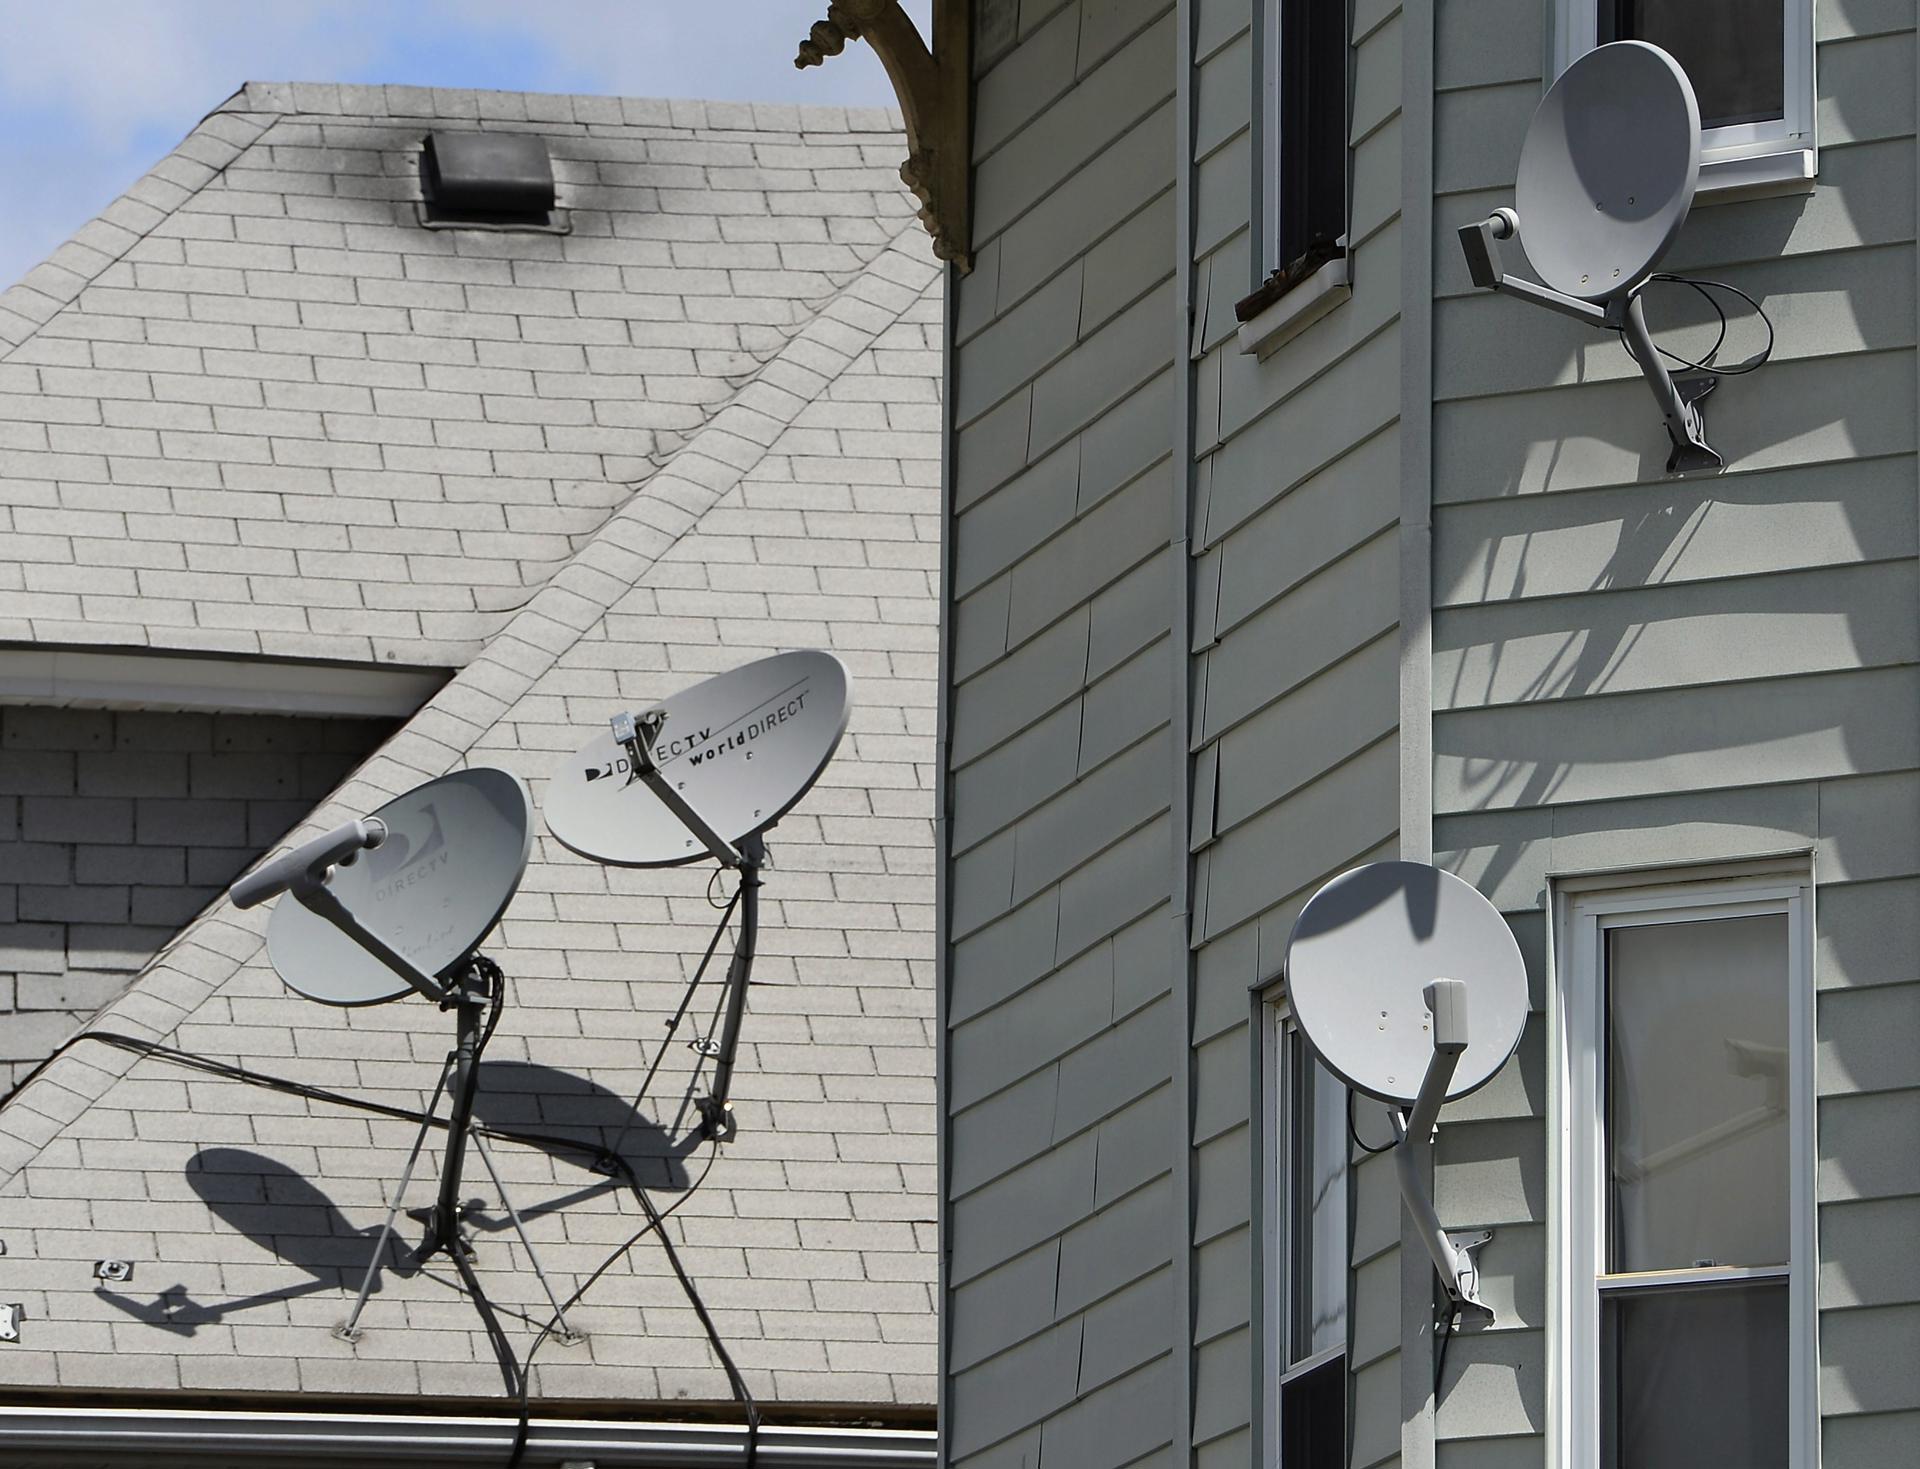 Vista general de varias antenas de televisión en el exterior de una casa. EFE/Cj Gunther/Archivo